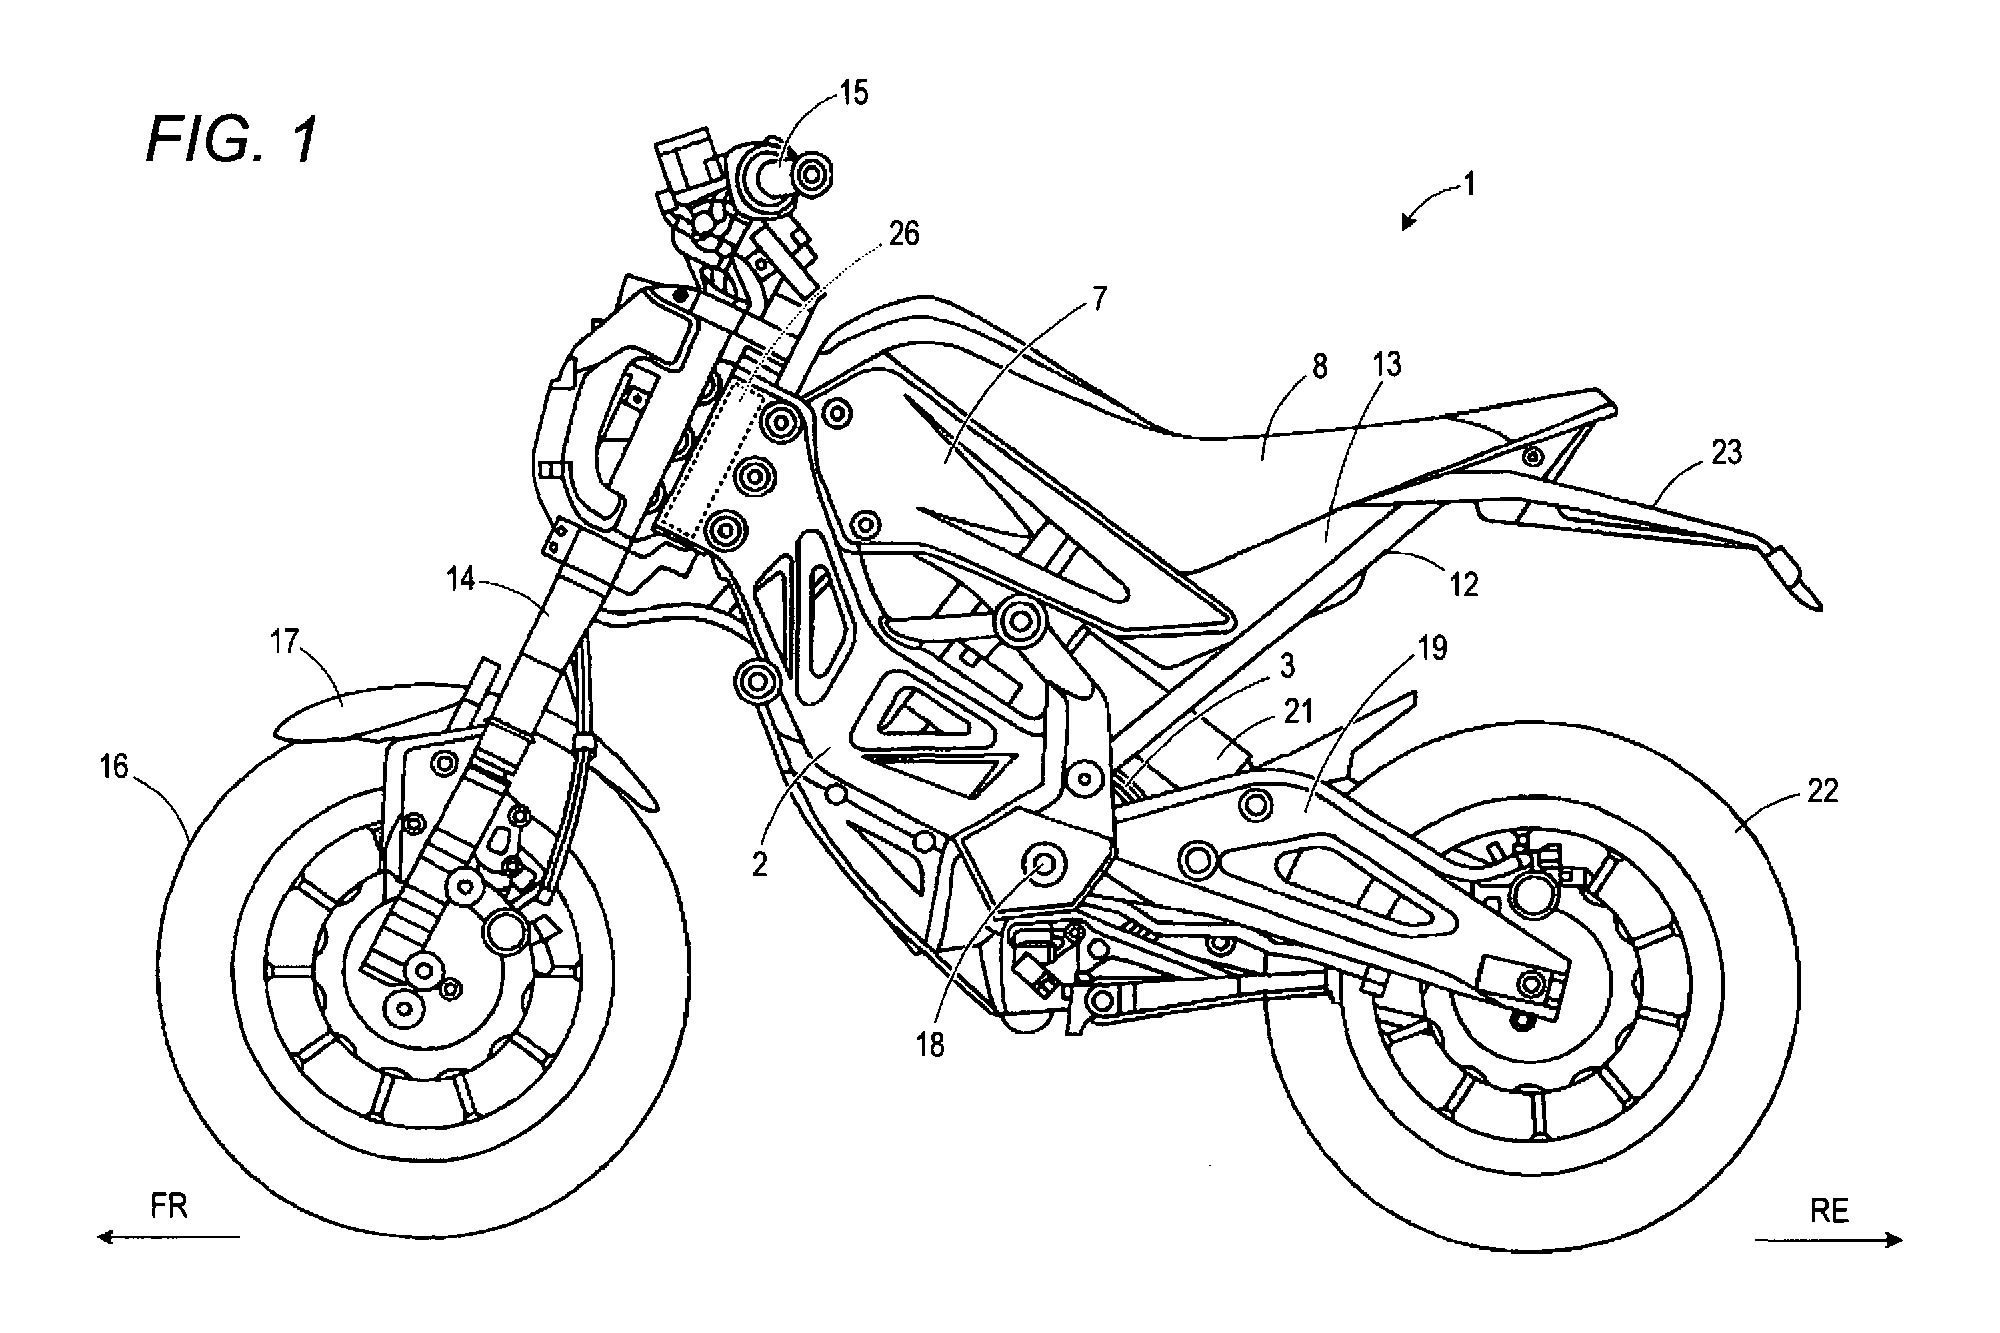 
Hình ảnh của Suzuki Extrigger trong tài liệu đăng ký bản quyền.
